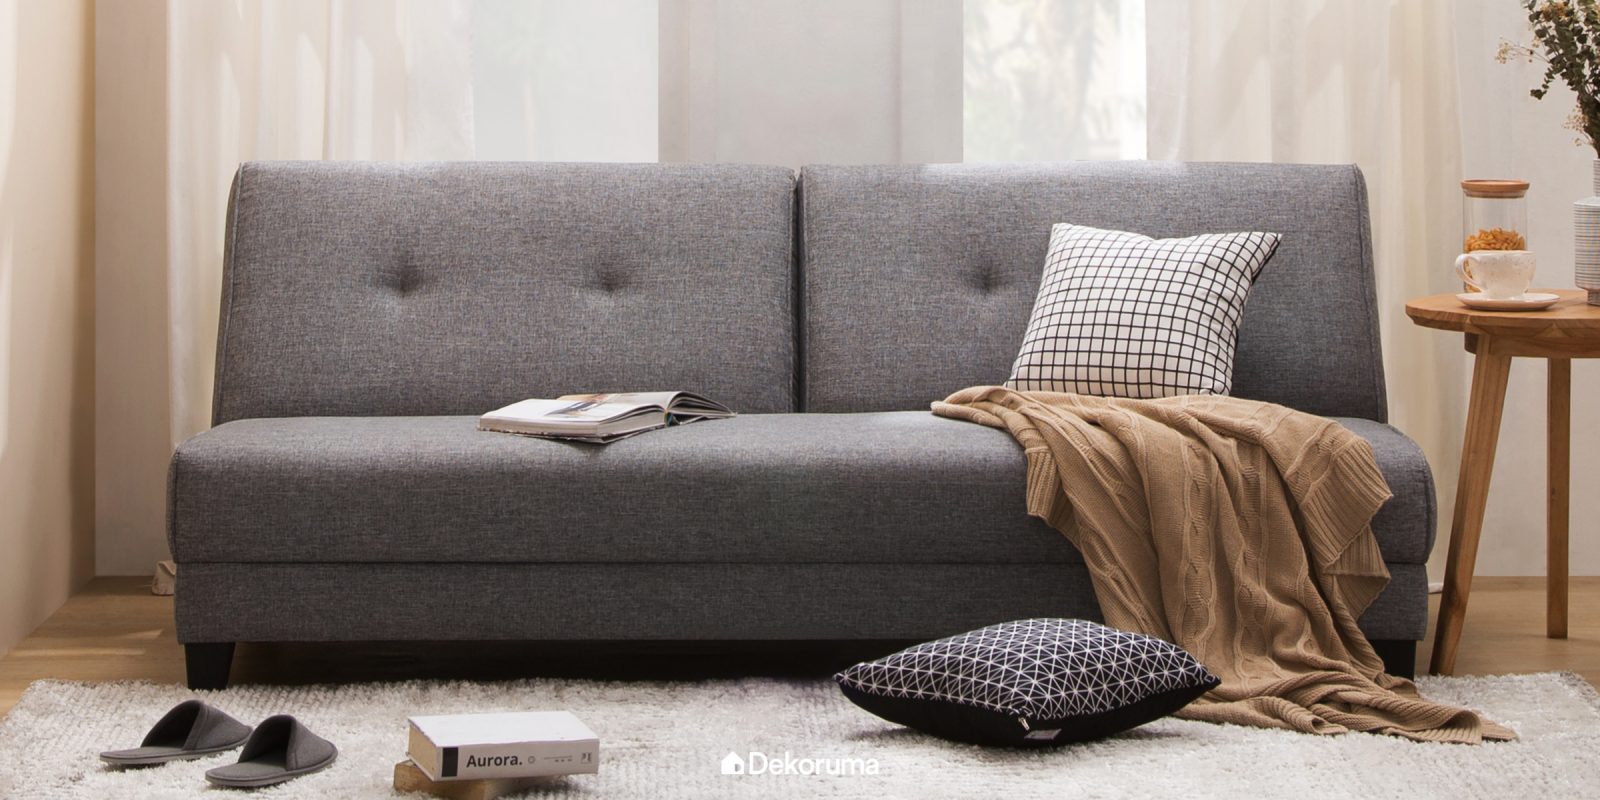 5 Langkah memilih Sofa berkualita